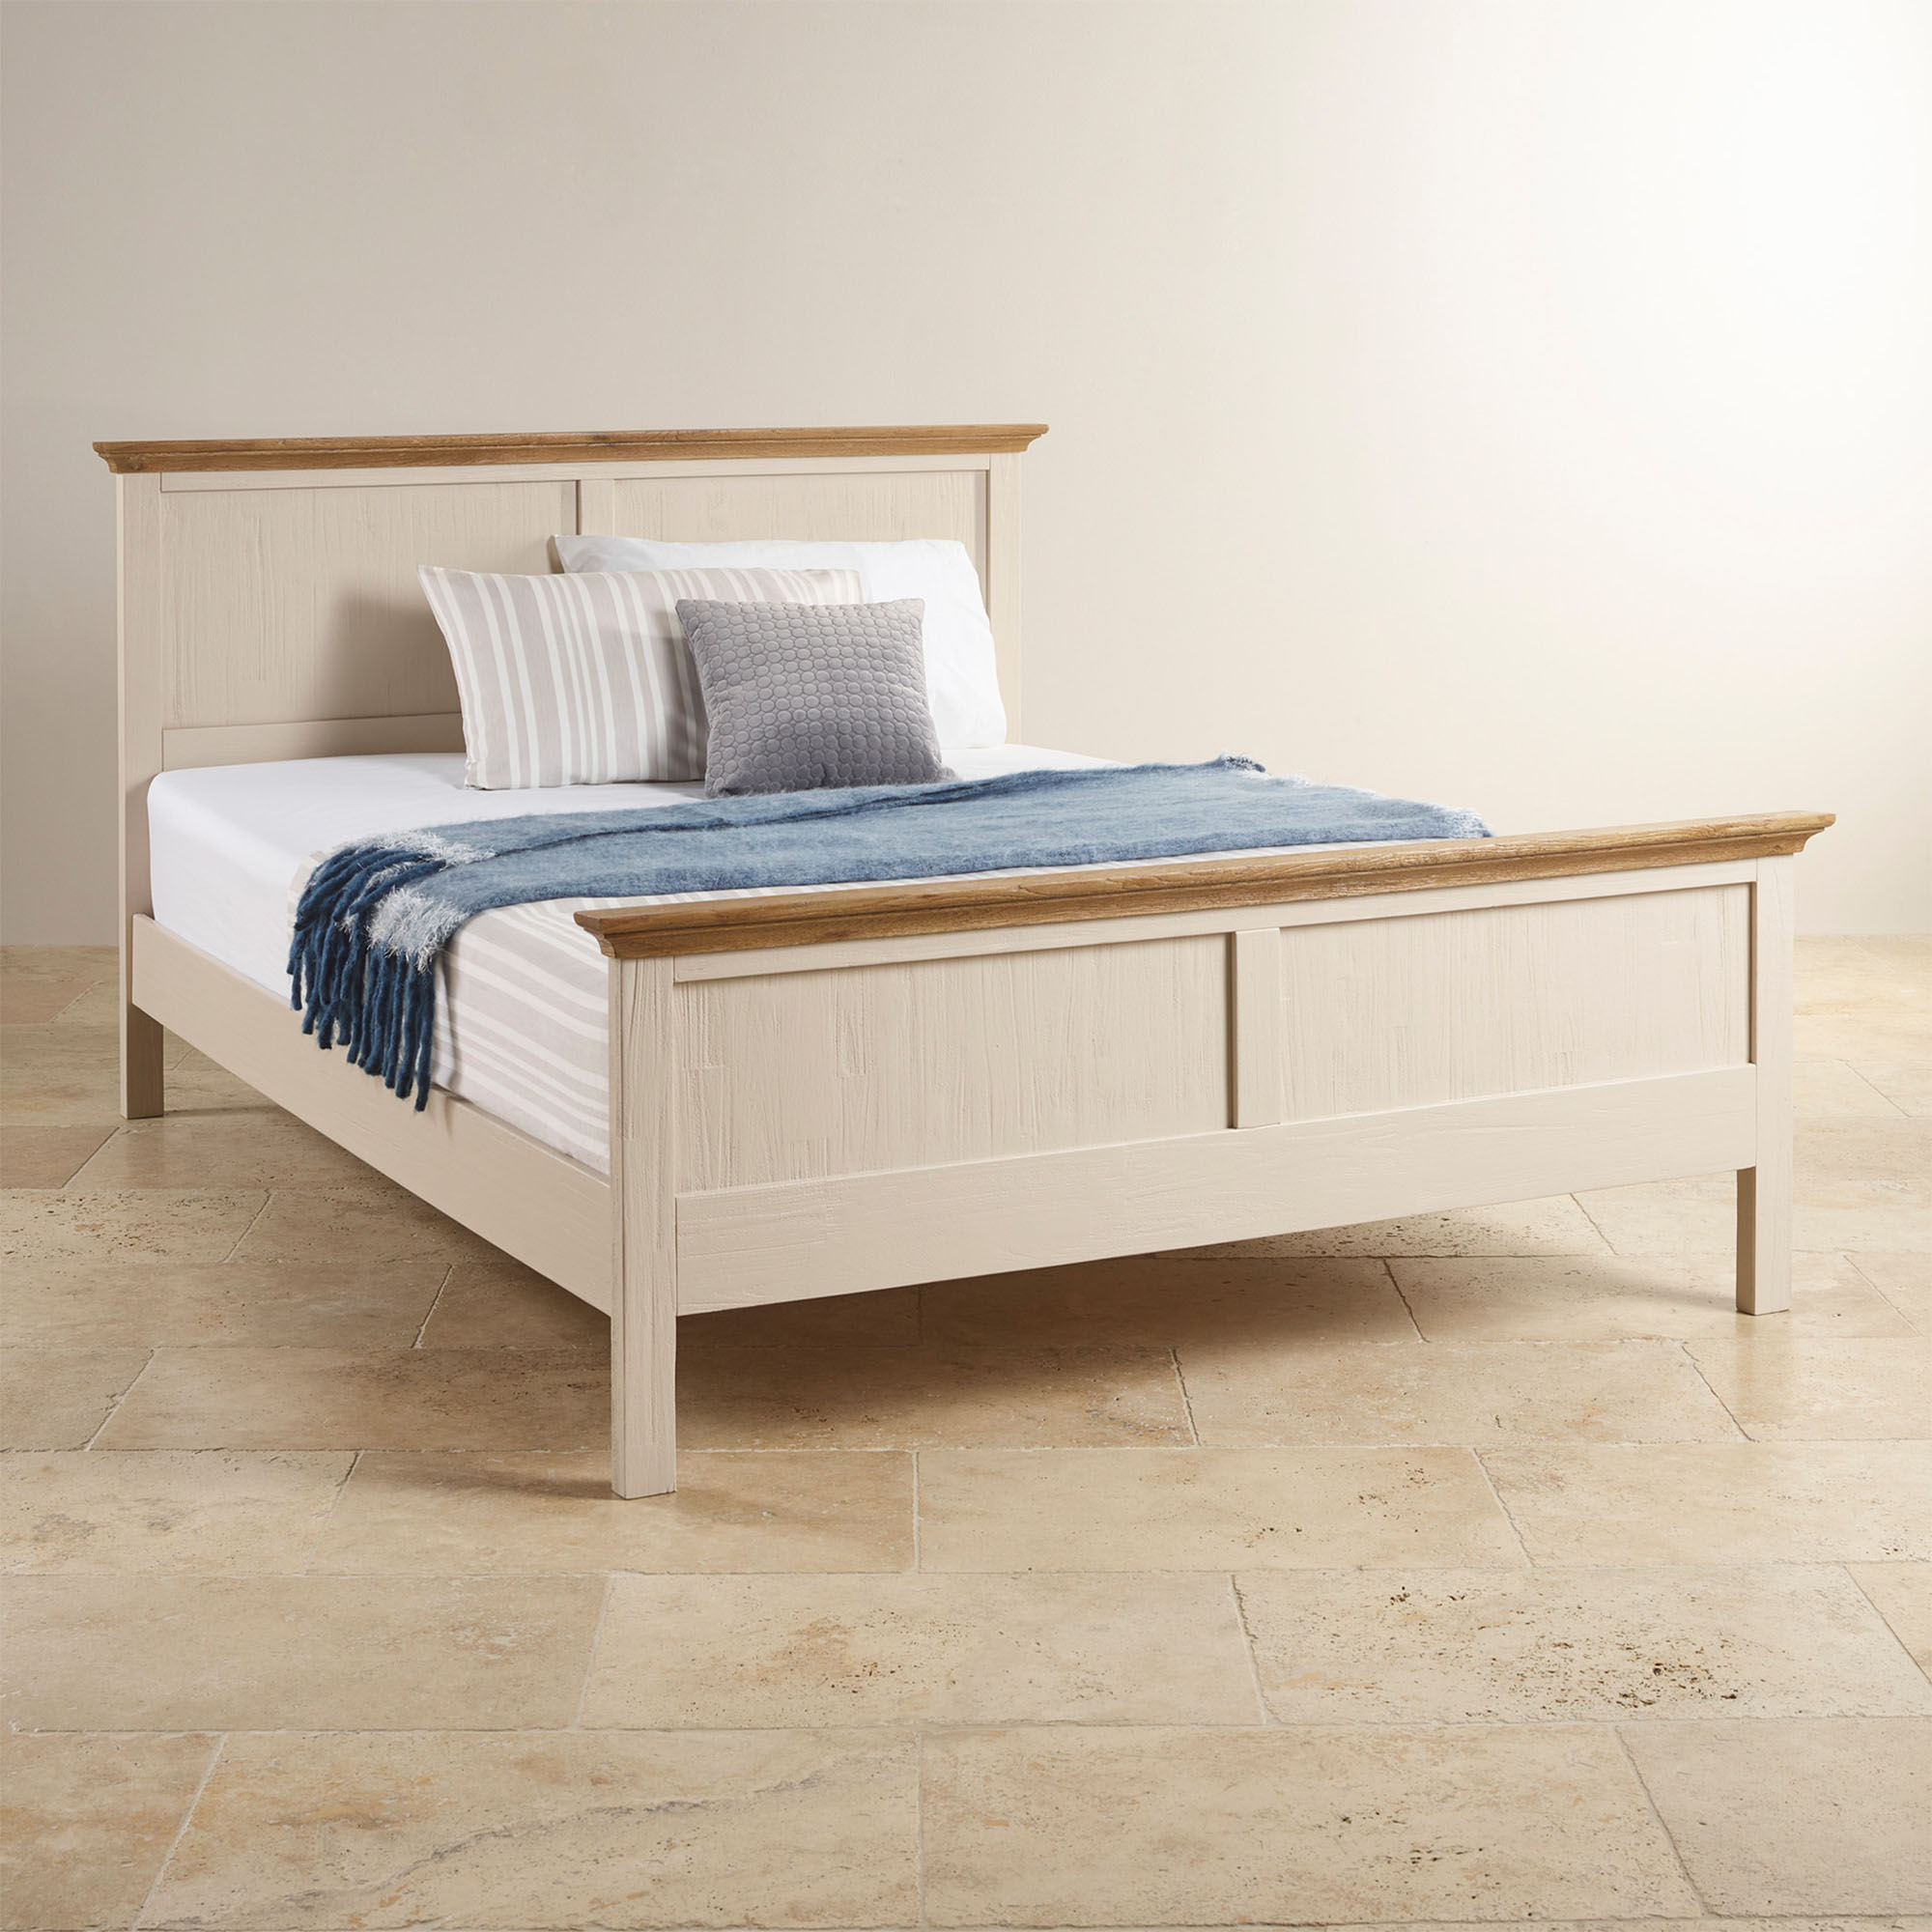 Với chiếc giường Cozino Sark này bạn có thể dễ dàng lau chùi sàn nhà khi cần thiết (Nguồn: google.com)